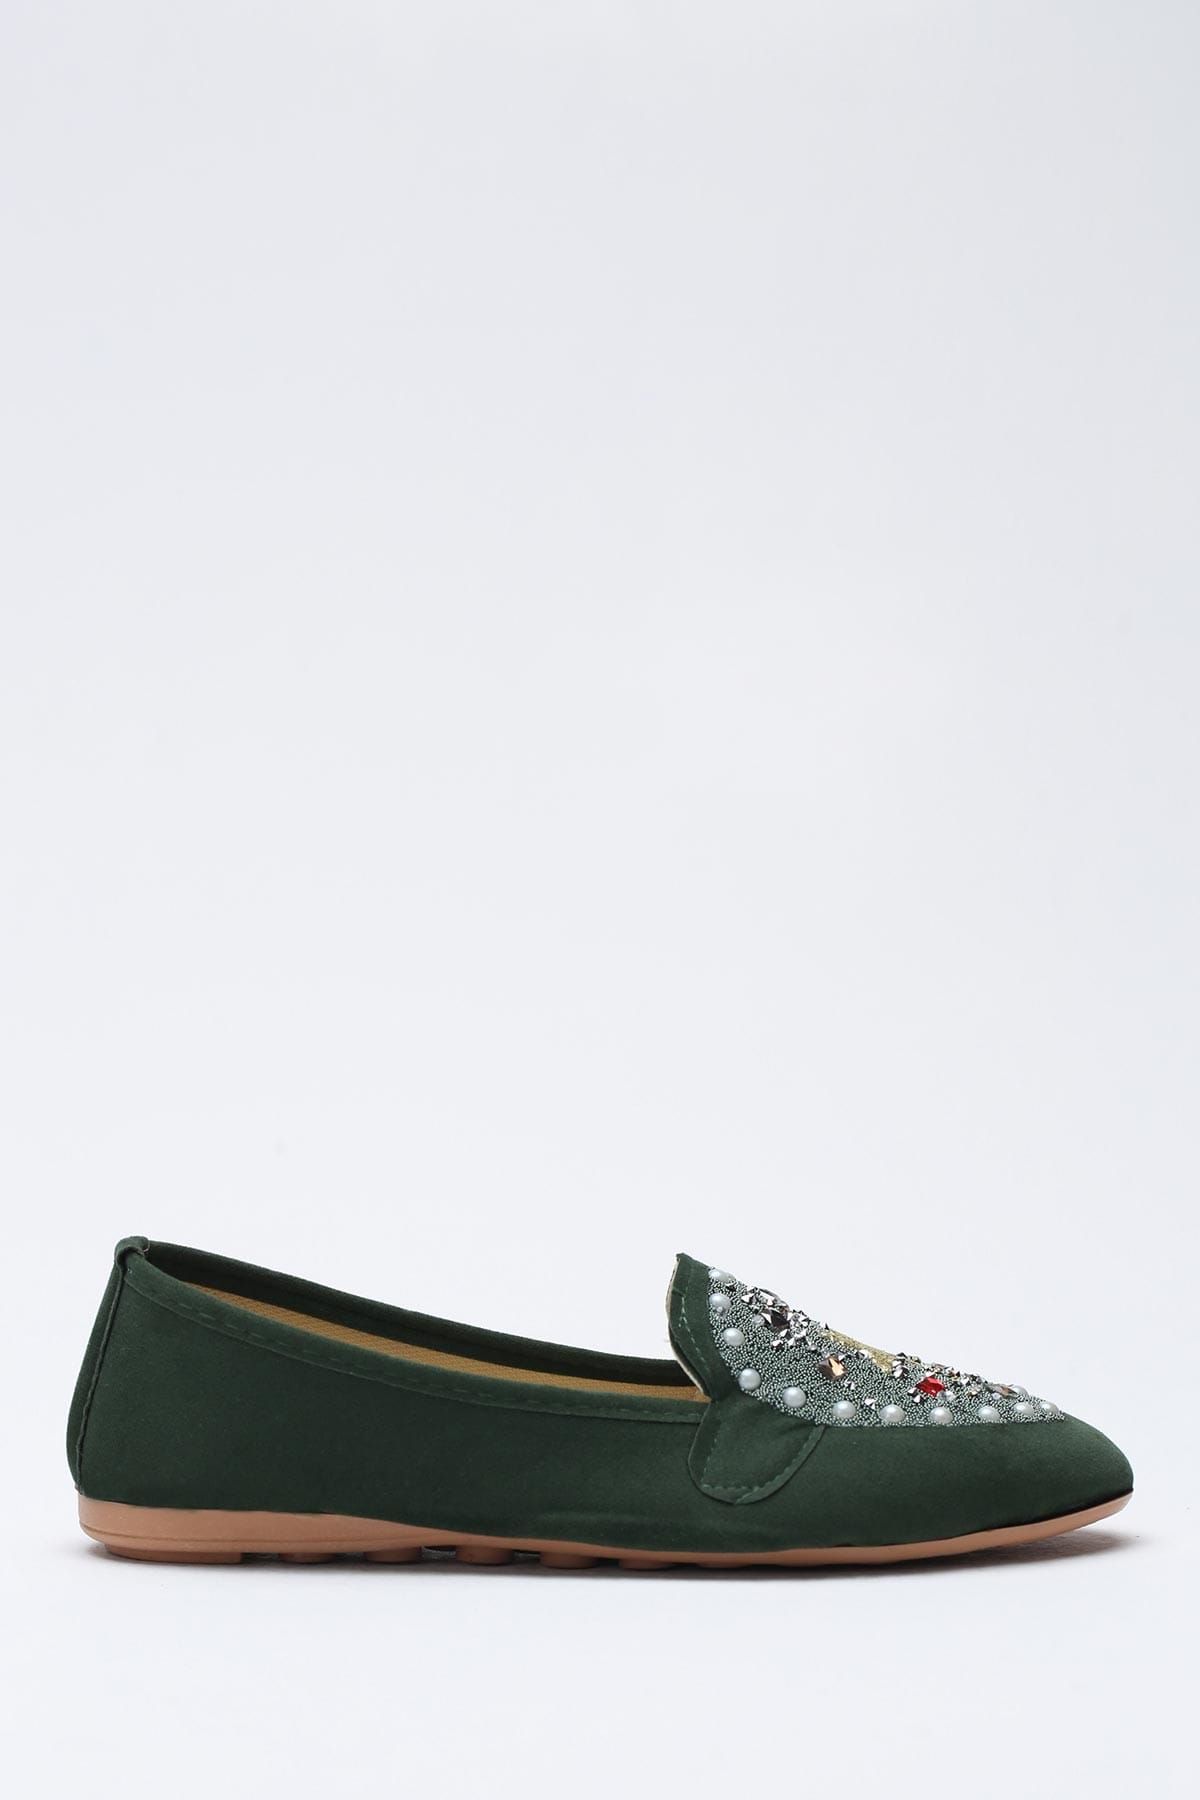 Ayakkabı Modası Yeşil Kadın Babet 1938-9-4000